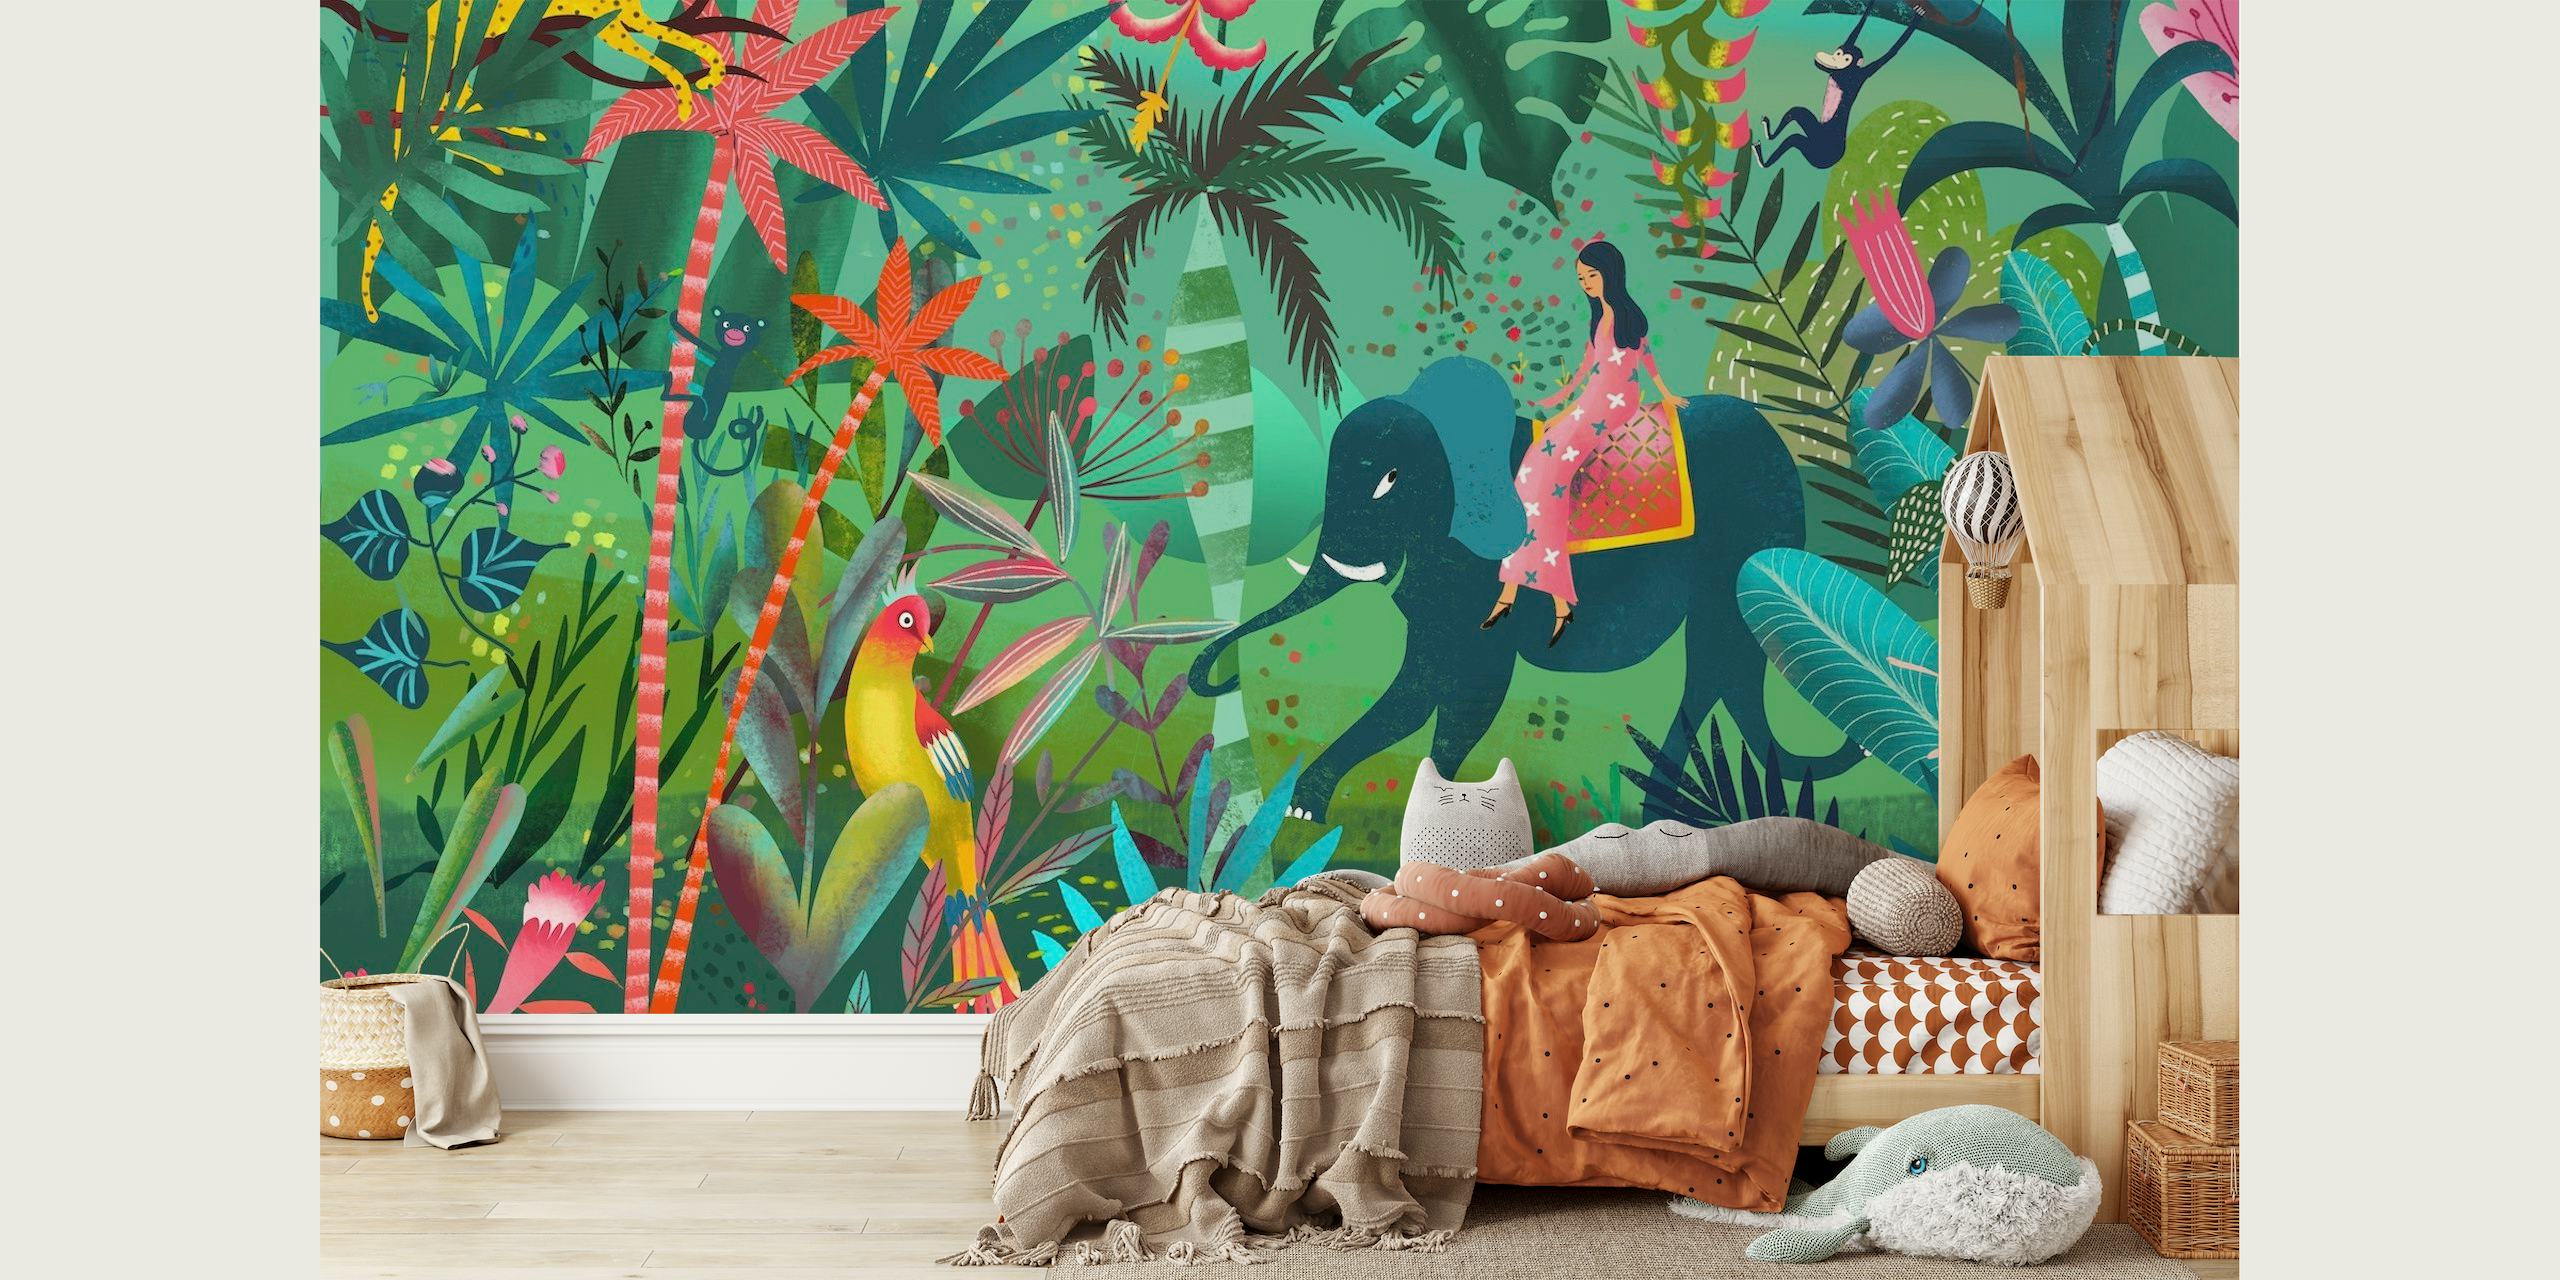 Fotomural vinílico colorido de passeio na selva de elefante com plantas tropicais e vida selvagem